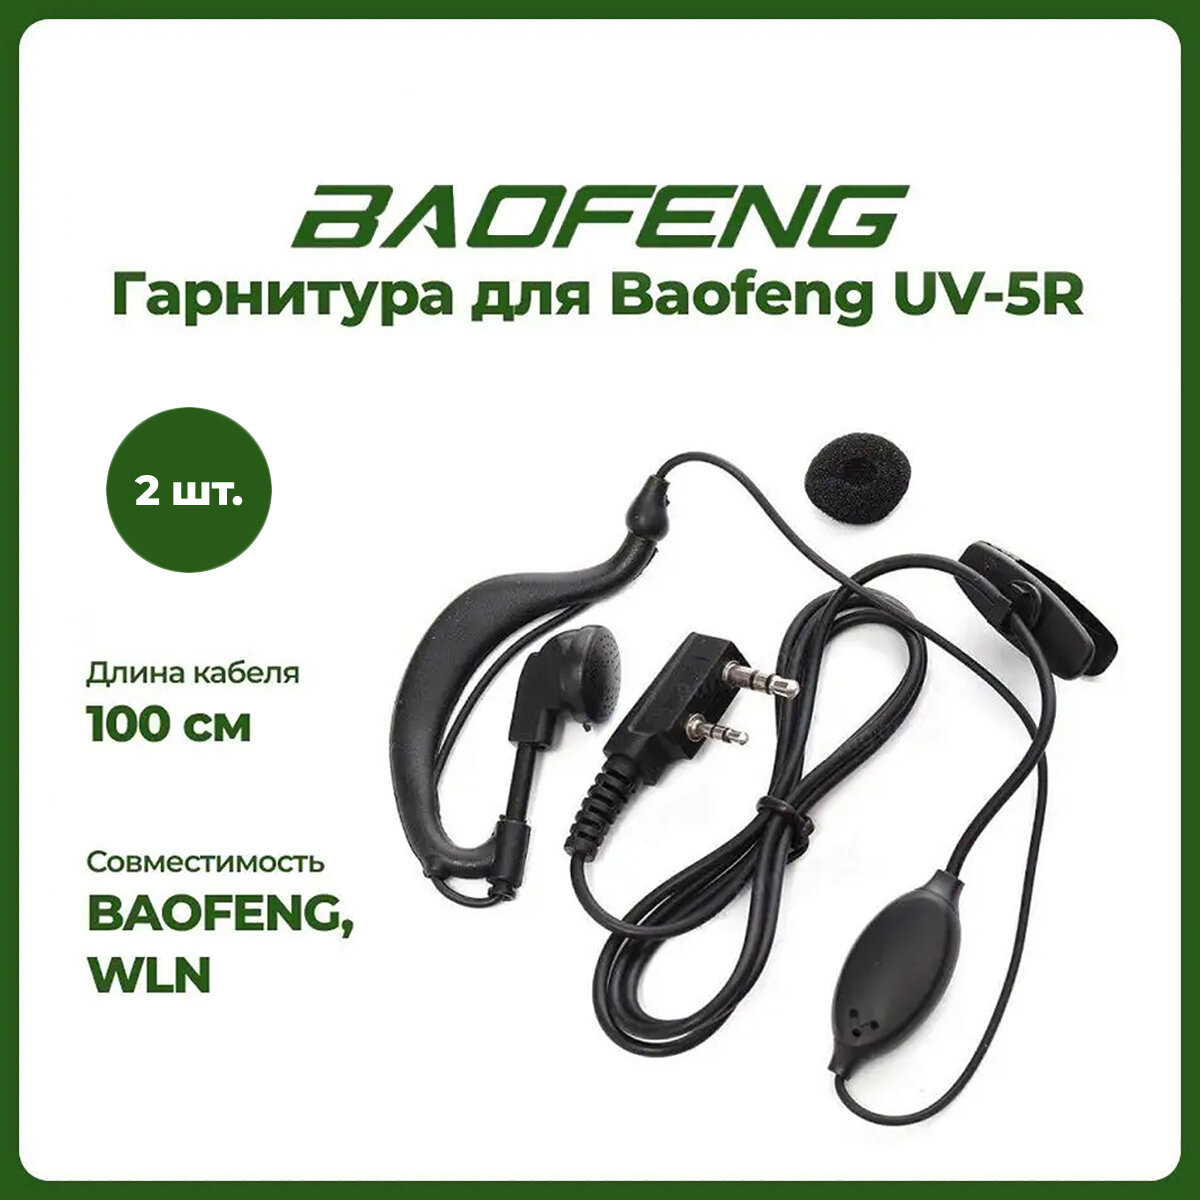 Гарнитура для рации Baofeng UV-5R комплект 2 